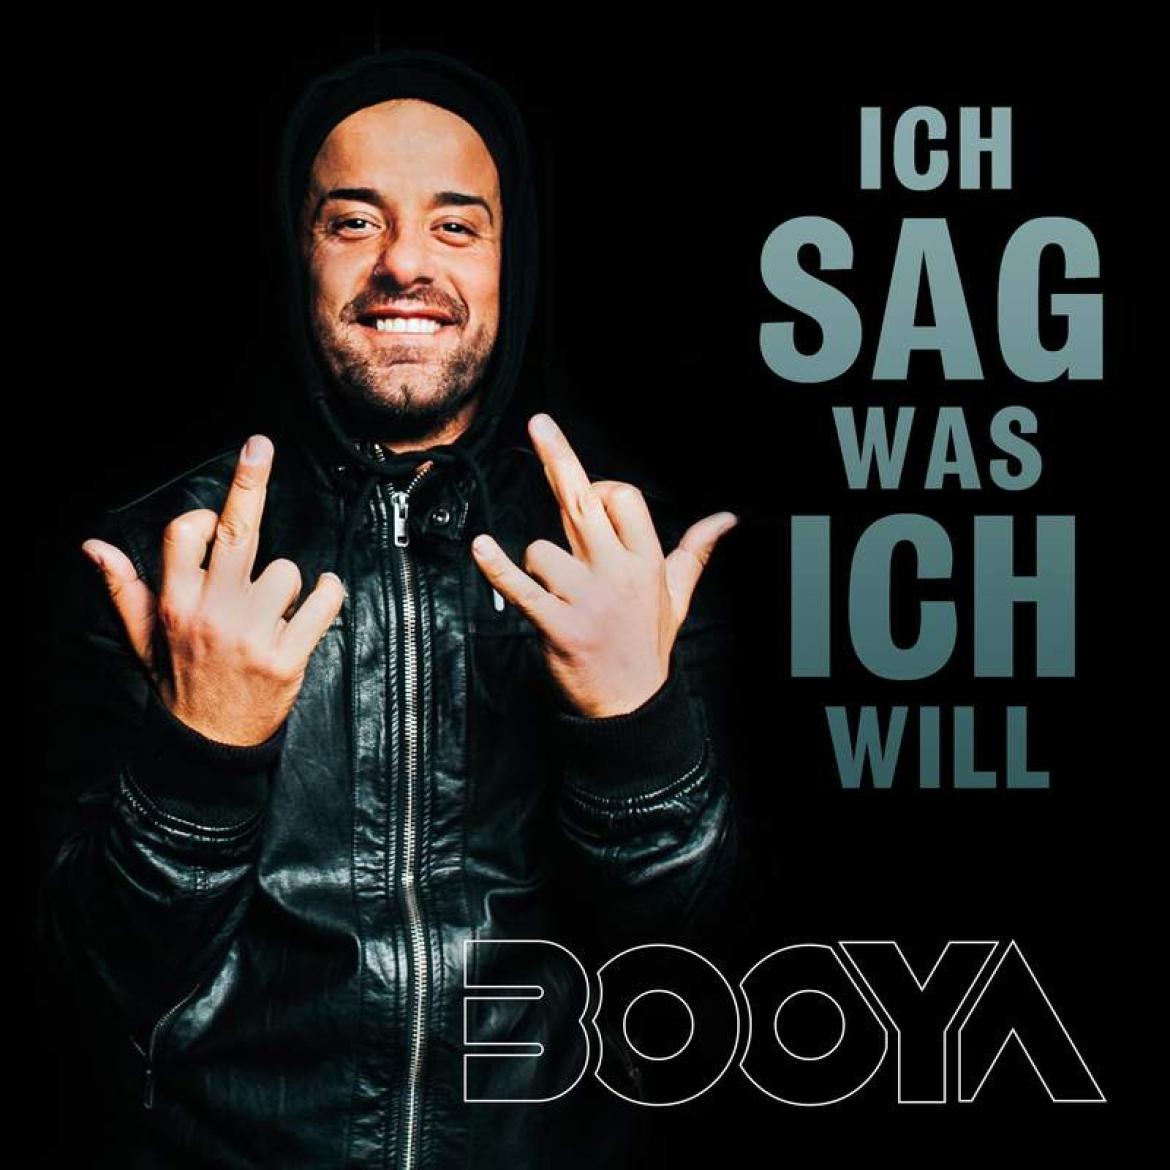 https://warp9.lnk.to/Booya_Ich_sag_was_ich_will